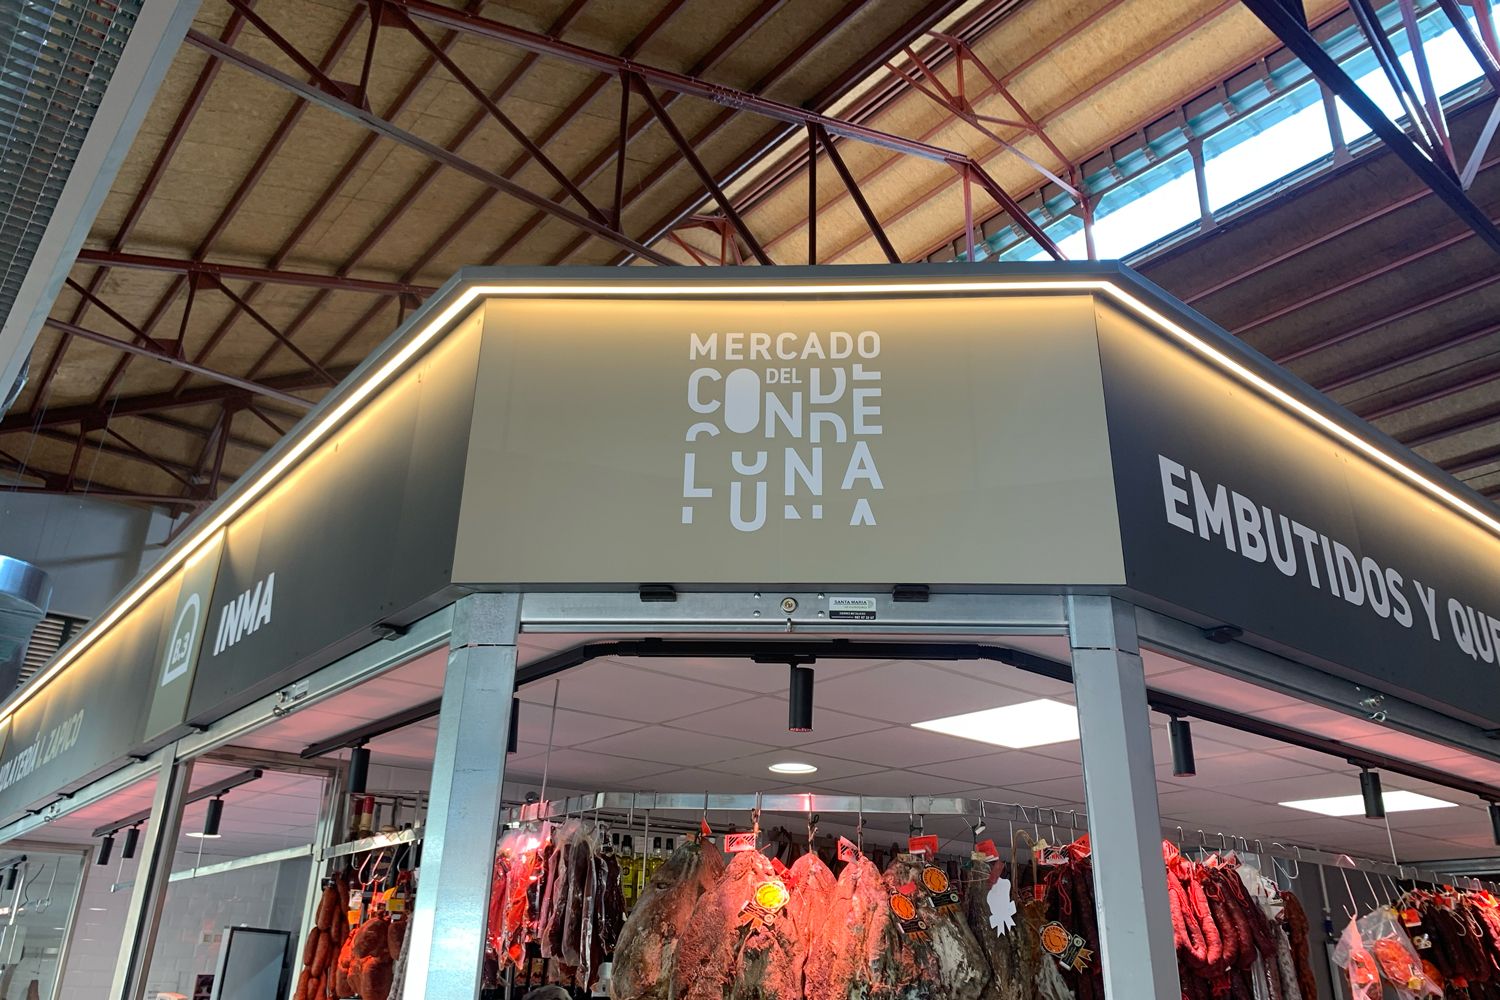 Mercado del Conde Luna de León